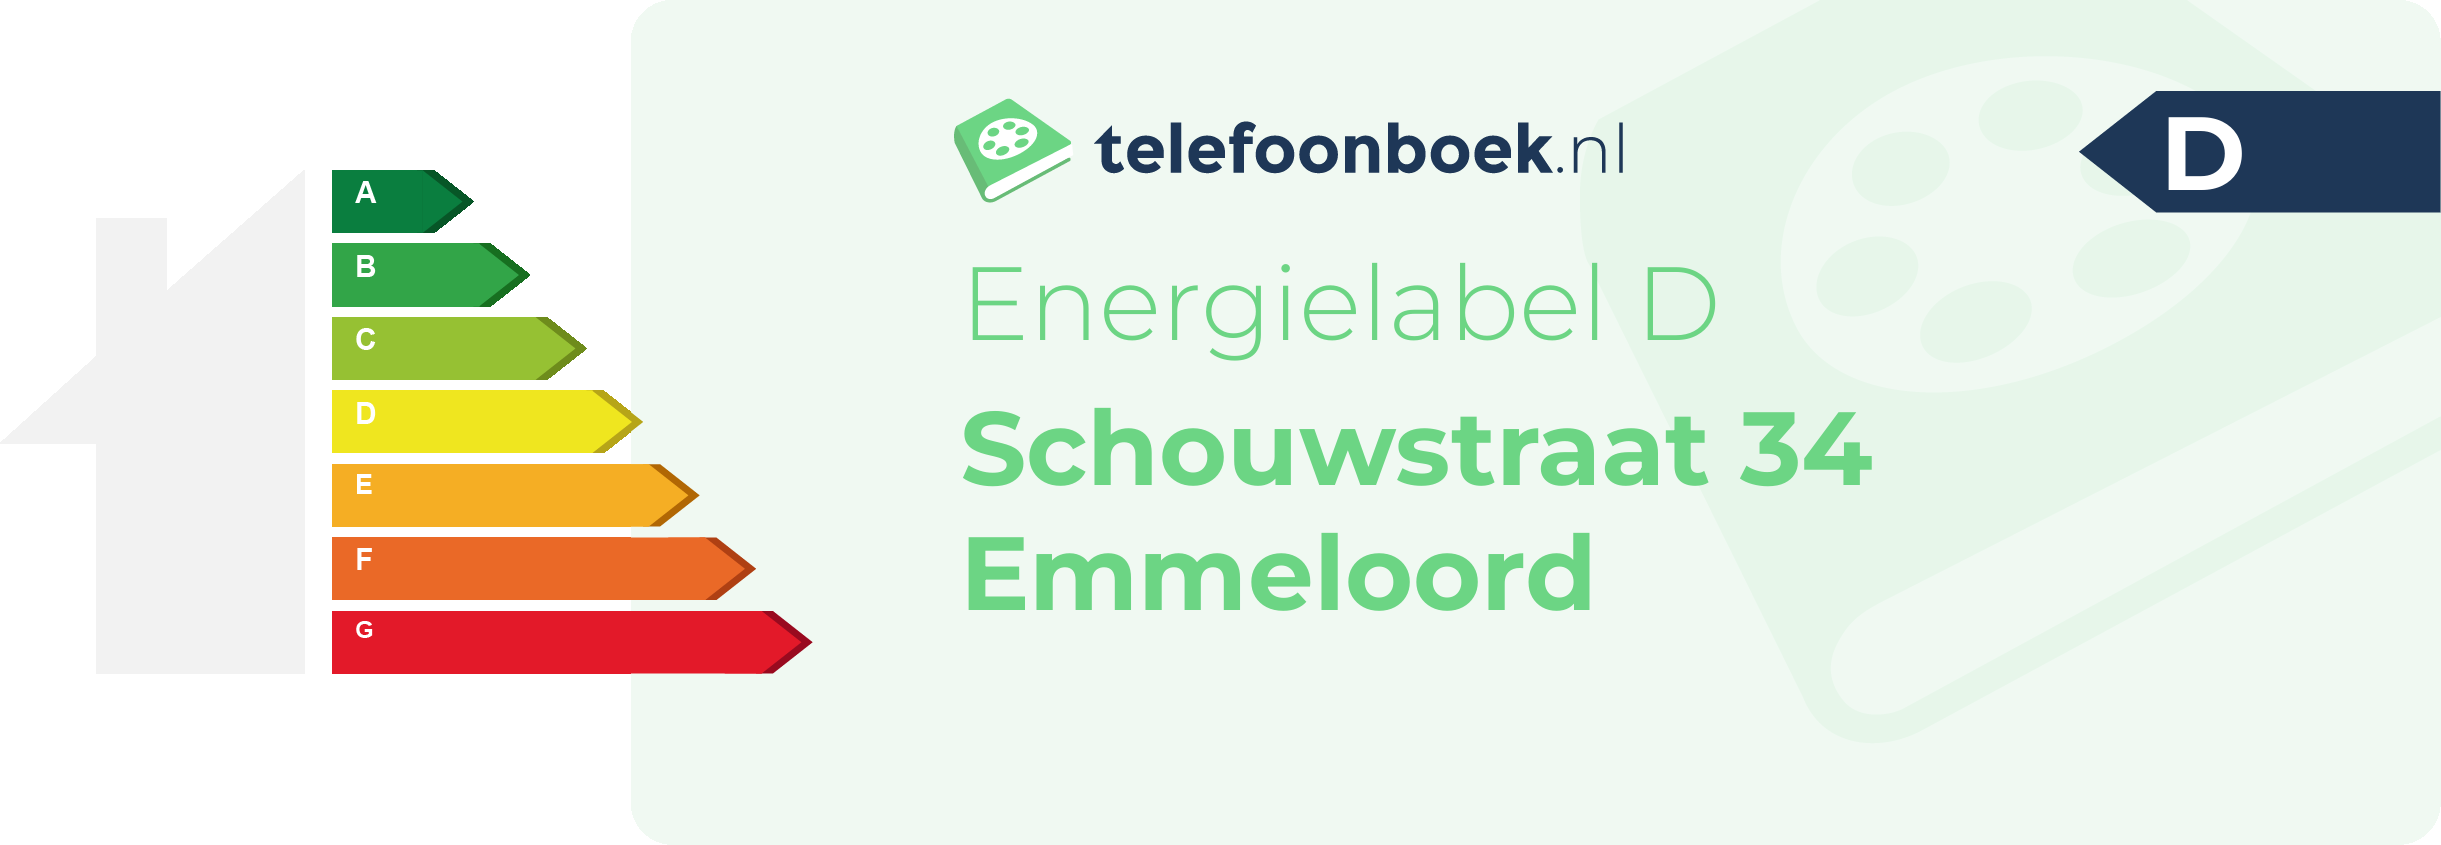 Energielabel Schouwstraat 34 Emmeloord